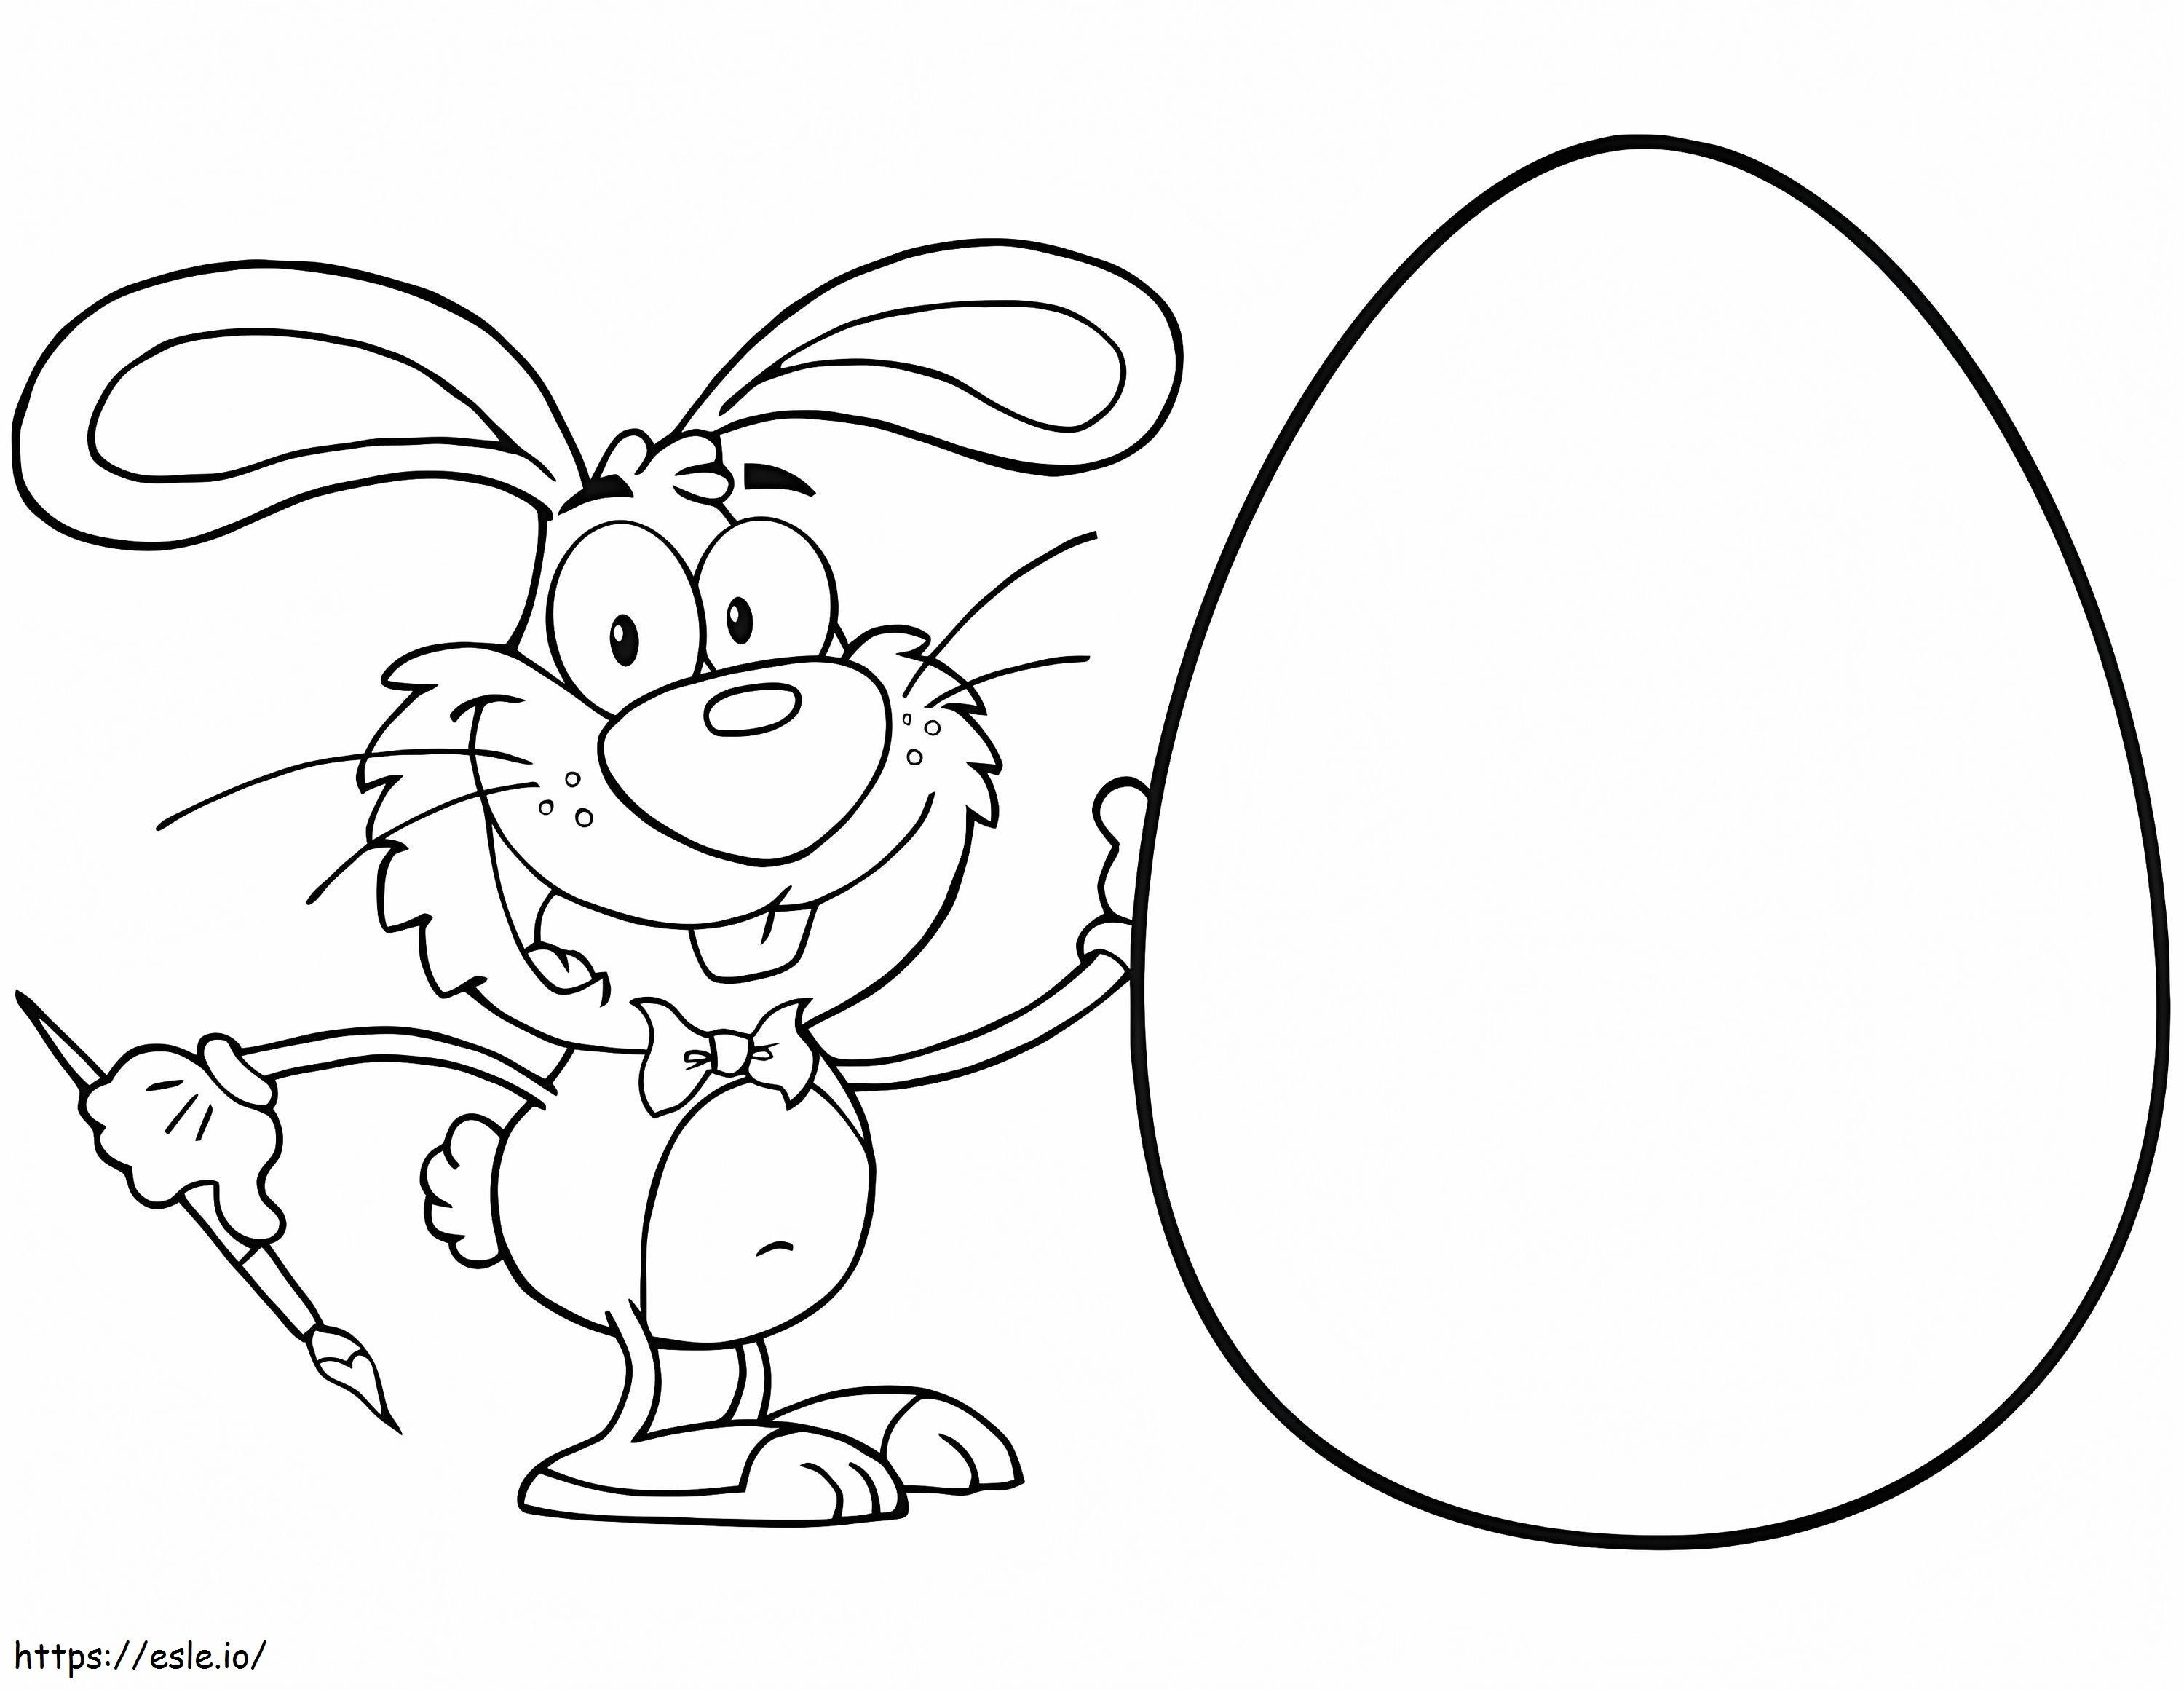 Osterkaninchen mit großem Ei ausmalbilder